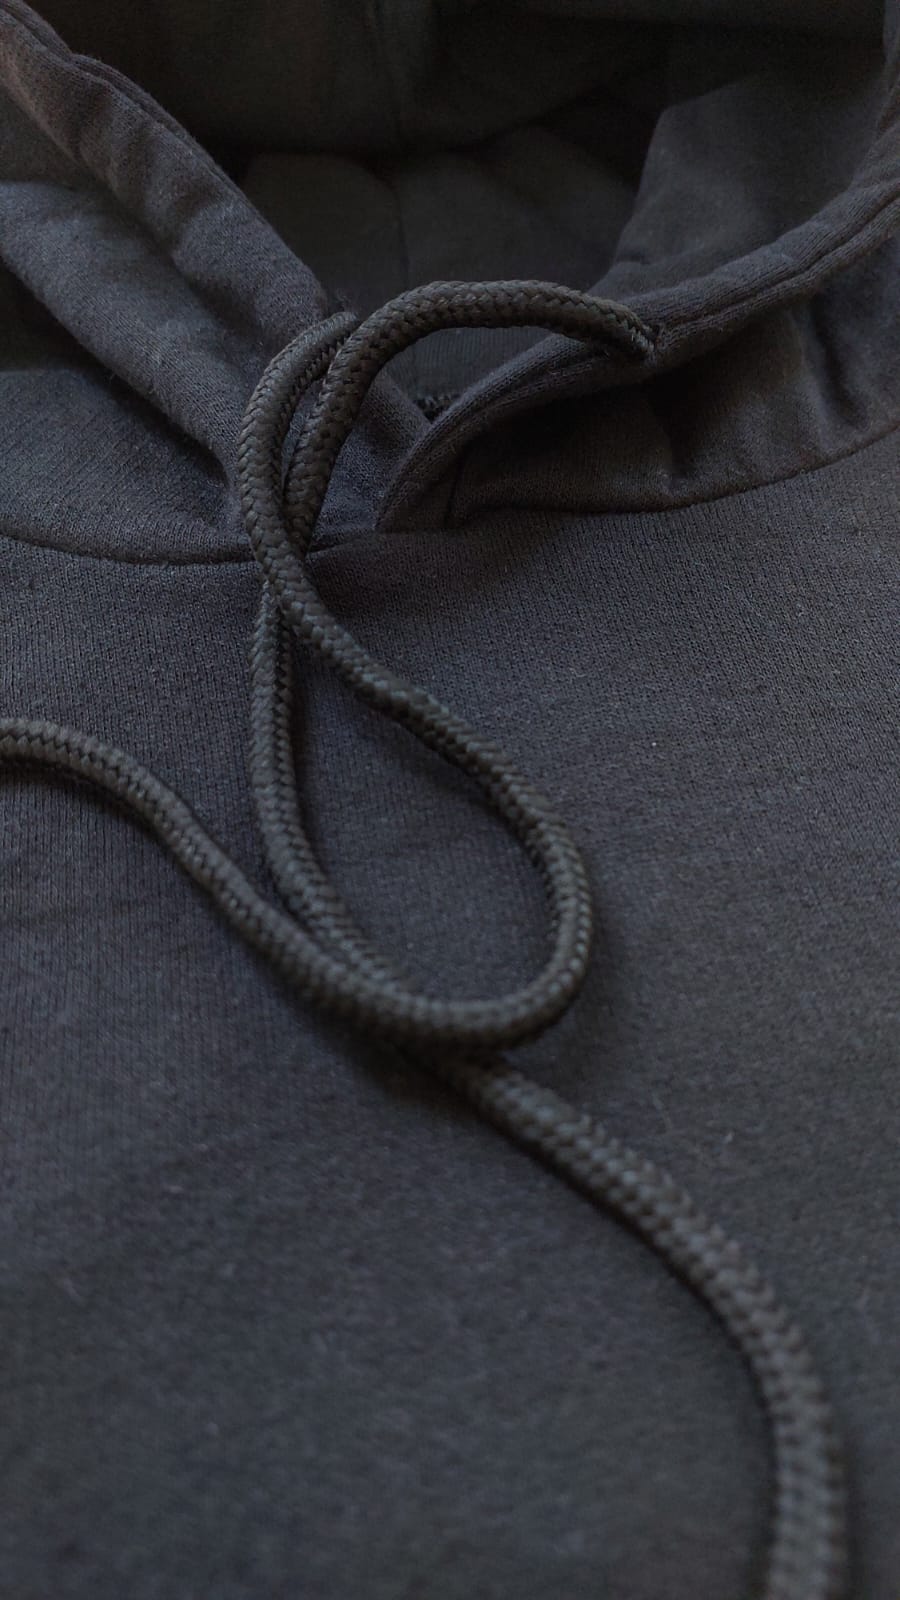 sweatshirt tasarla uygun fiyat yuvarlak yaka iki iplik 16